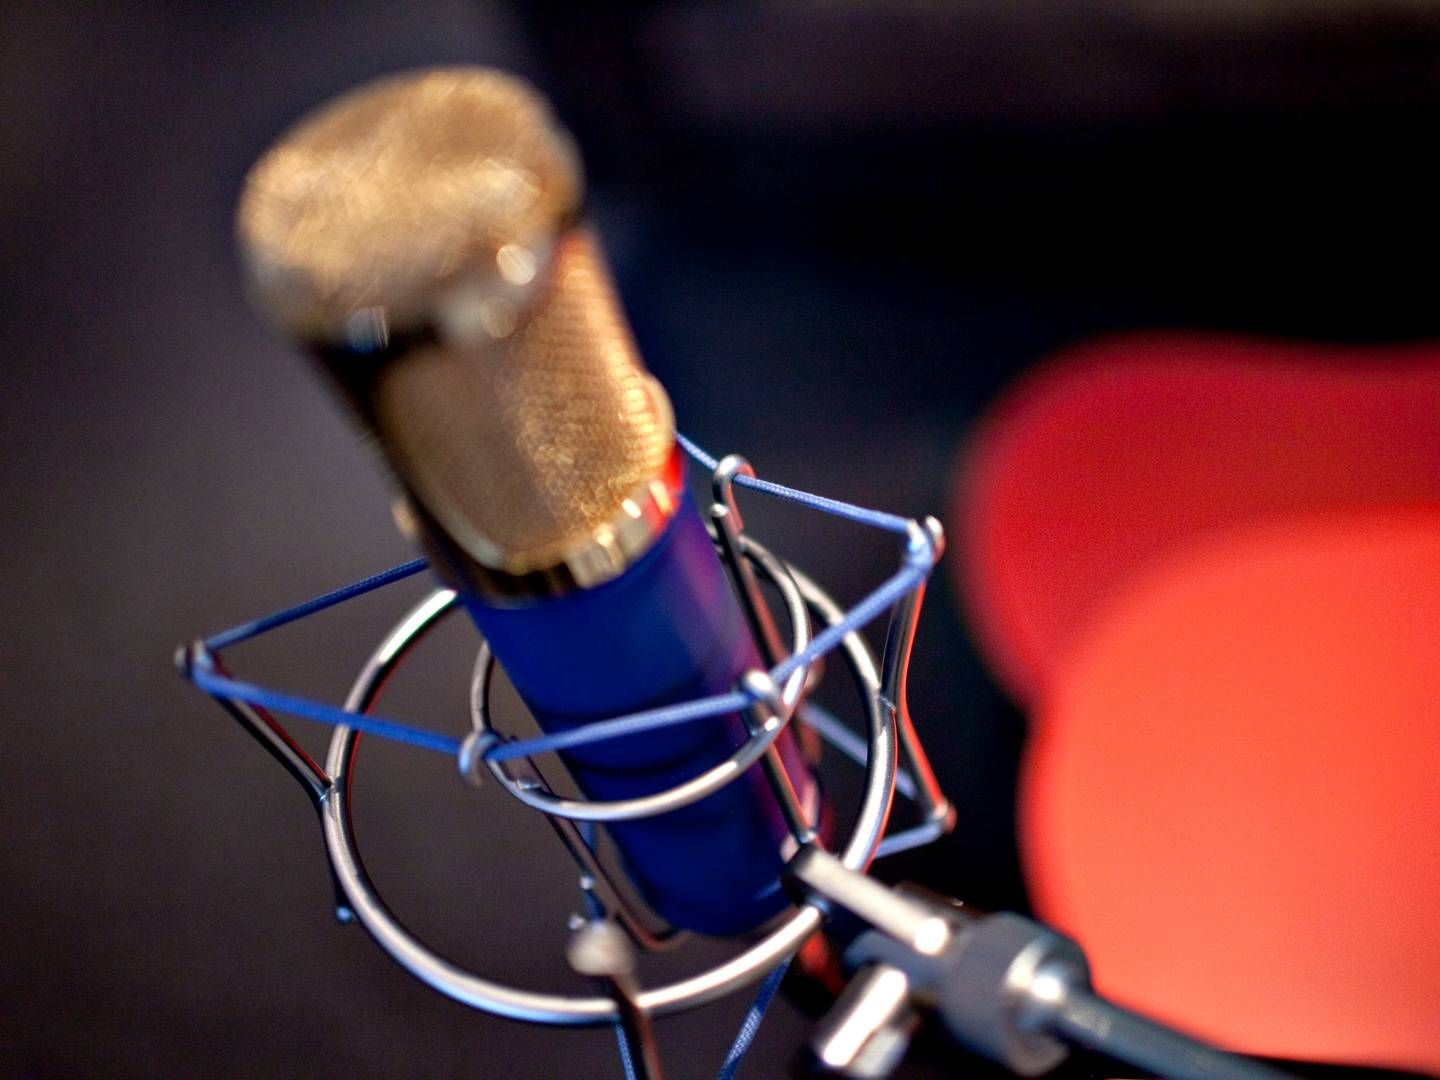 Podcastformater bliver ikke anerkendt nok, mener Third Ear Studios svenske ledelse efter mediestøtte-afslag. | Foto: Miriam Dalsgaard